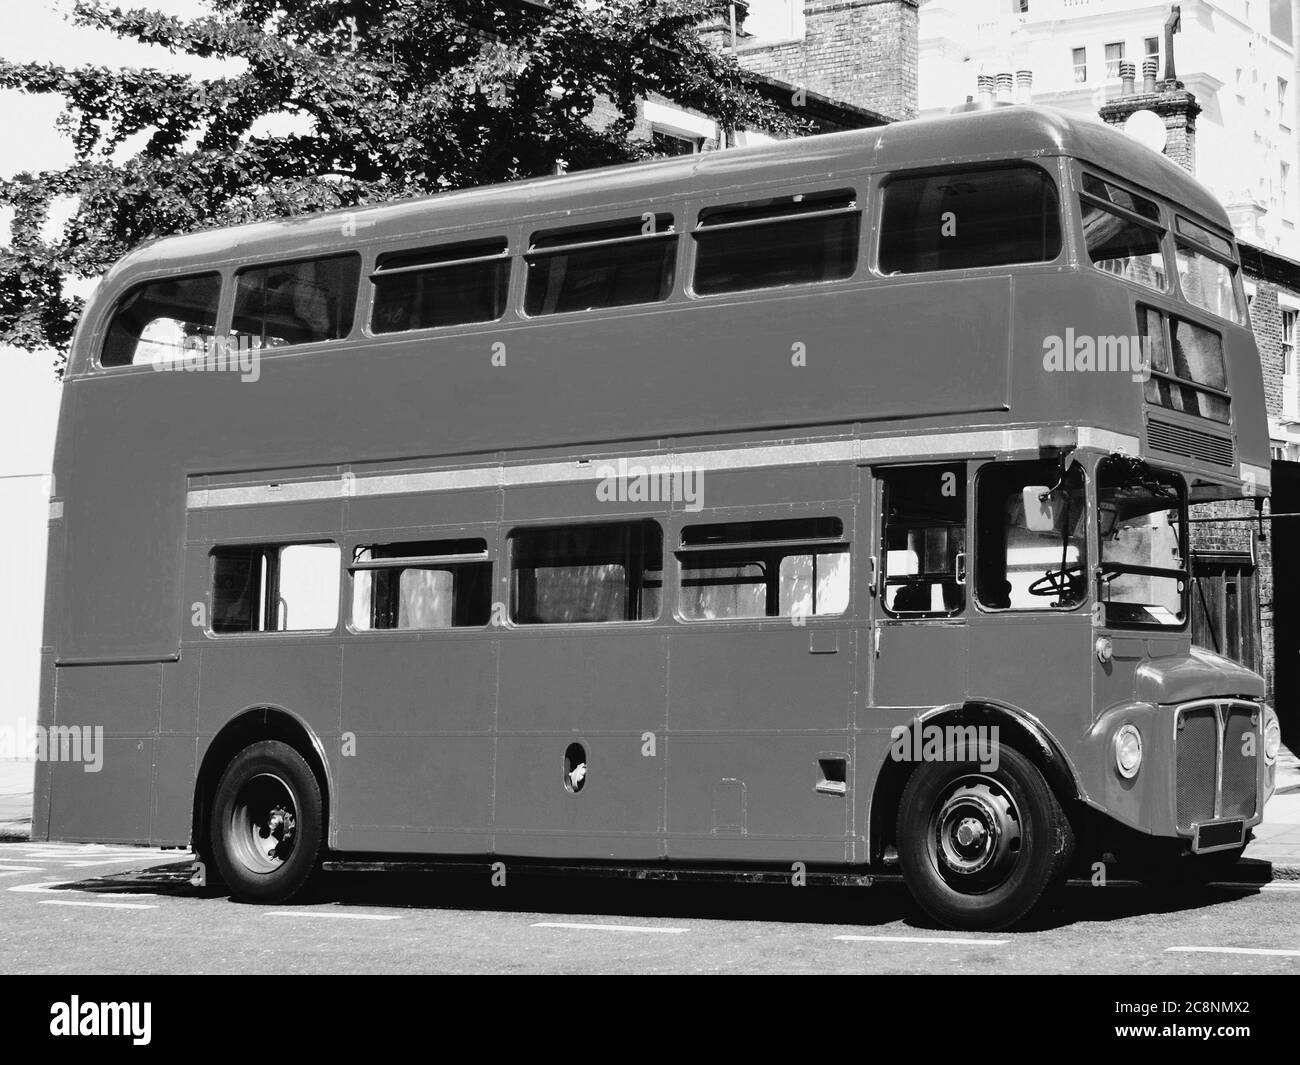 Londres Routemaster rouge bus à impériale à Londres Angleterre Royaume-Uni photo noir et blanc monochrome image stock Banque D'Images